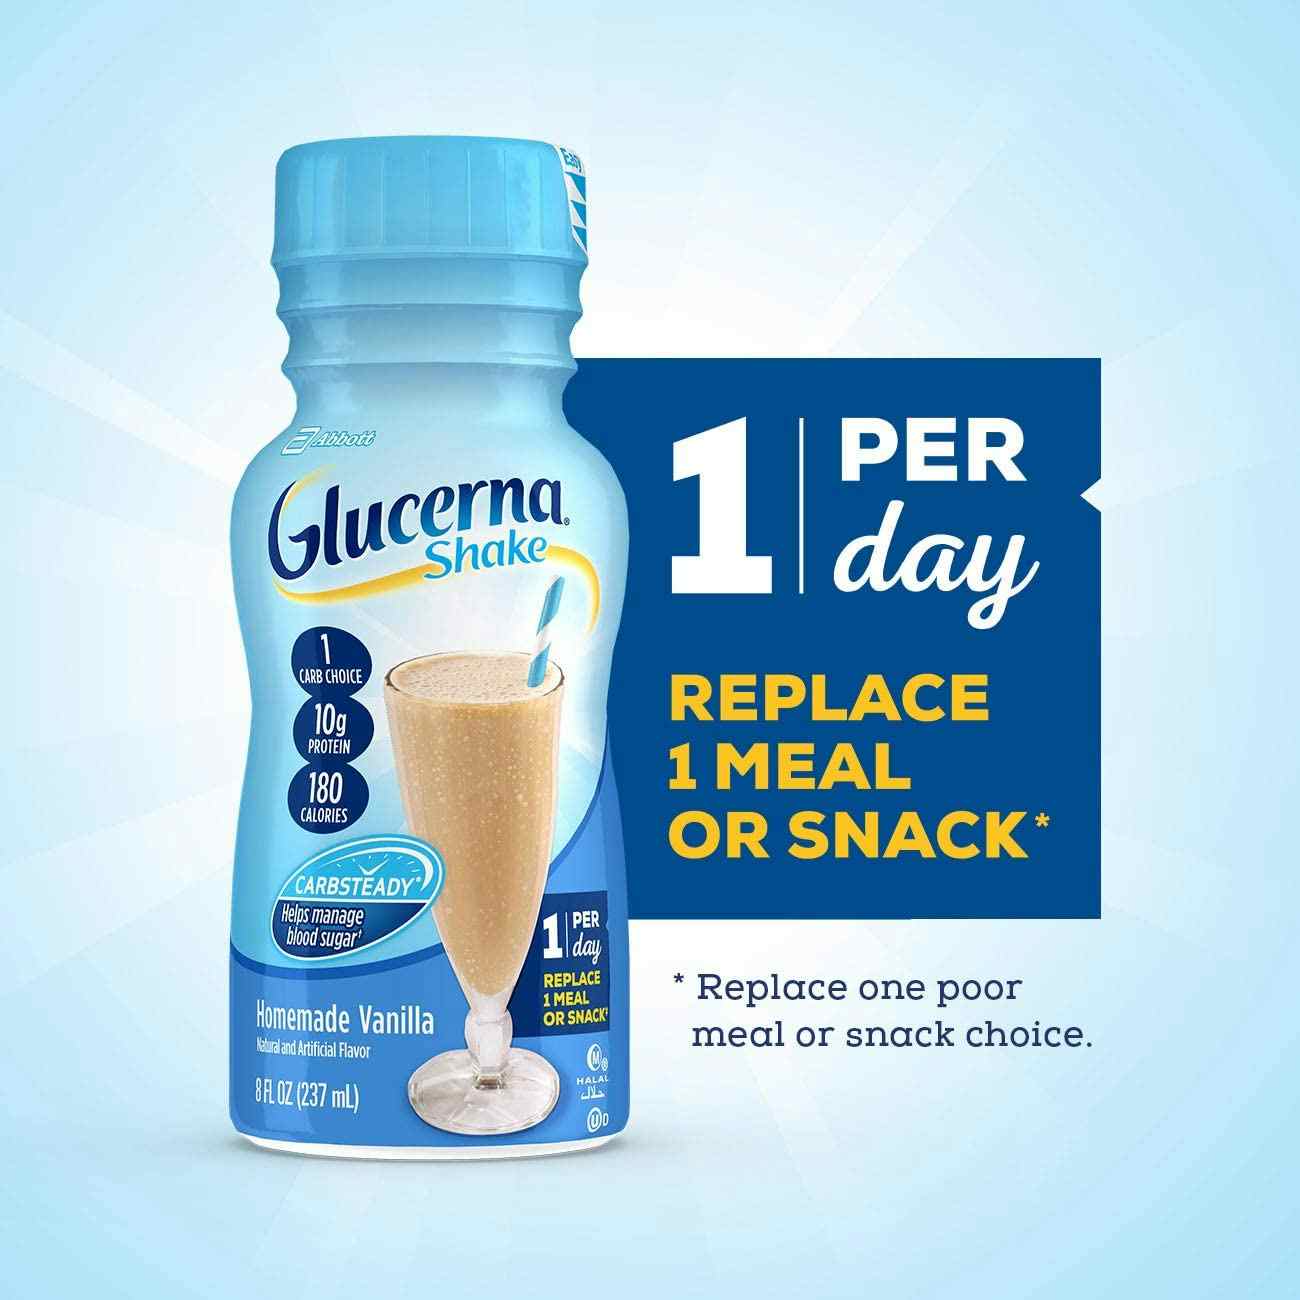 Glucerna Ready to Use Oral Supplement Shake, Bottle, Vanilla Flavor, 8 oz.